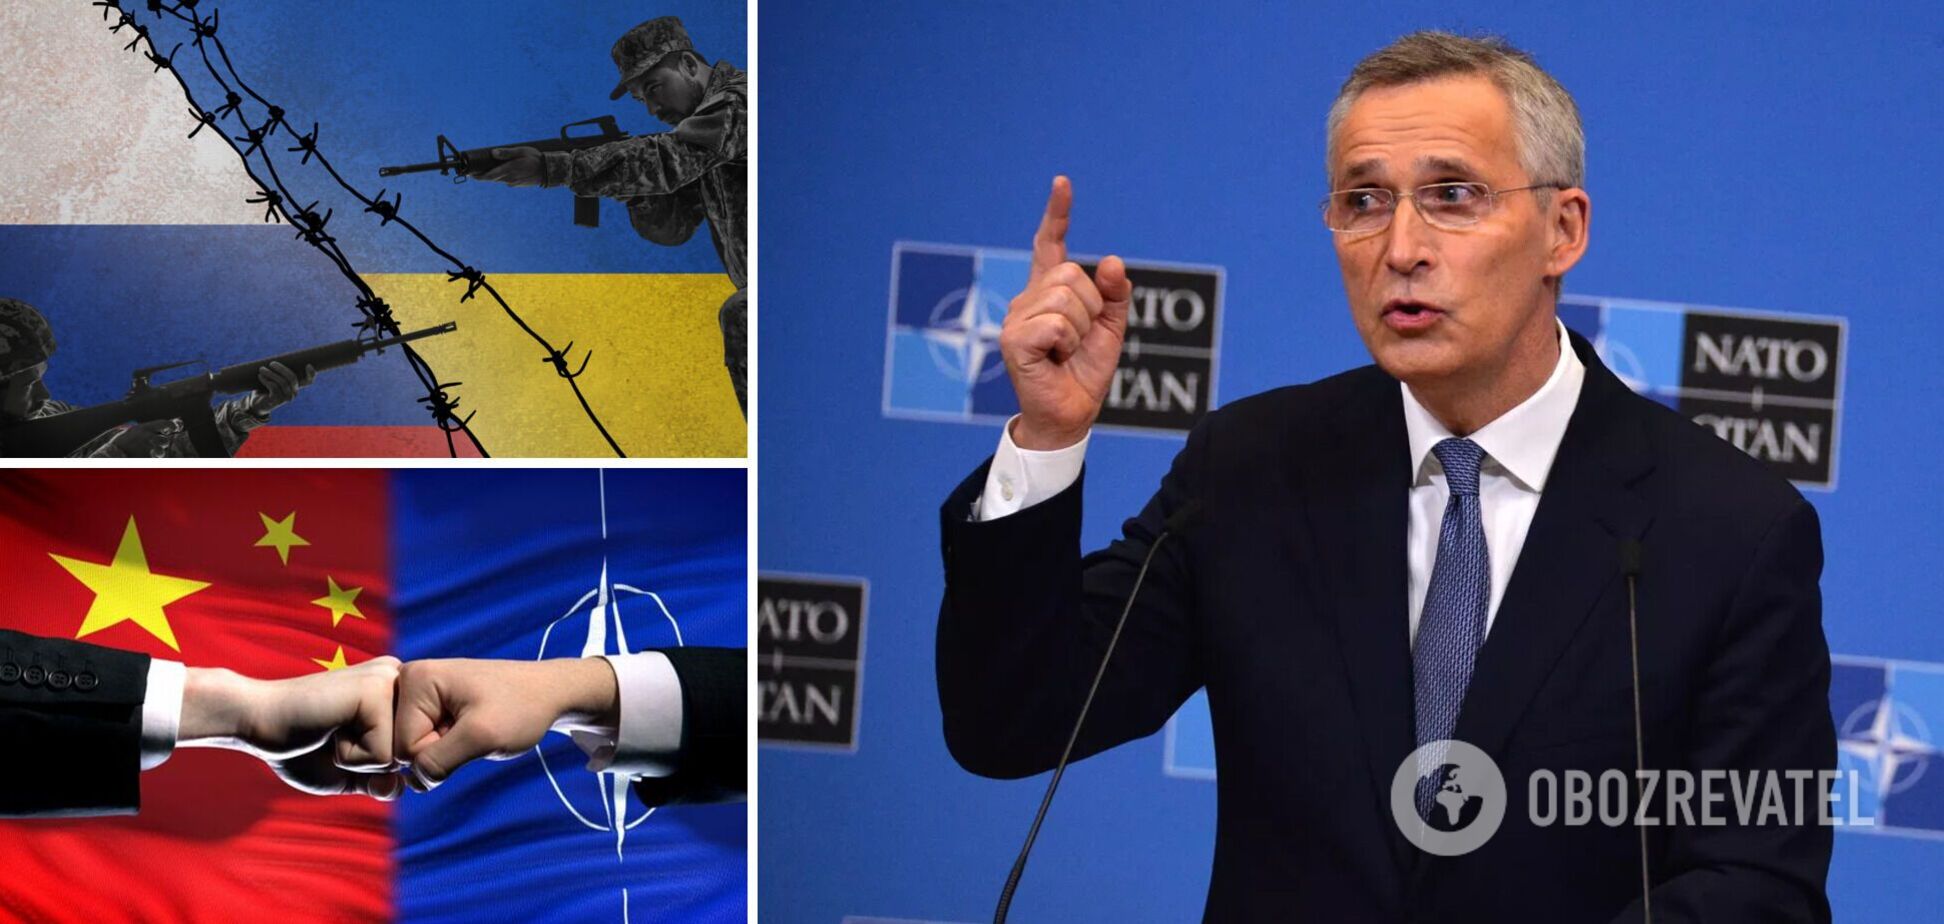 Росія – пряма загроза, Китай – не противник: у Мадриді проходить саміт НАТО. Головні заяви